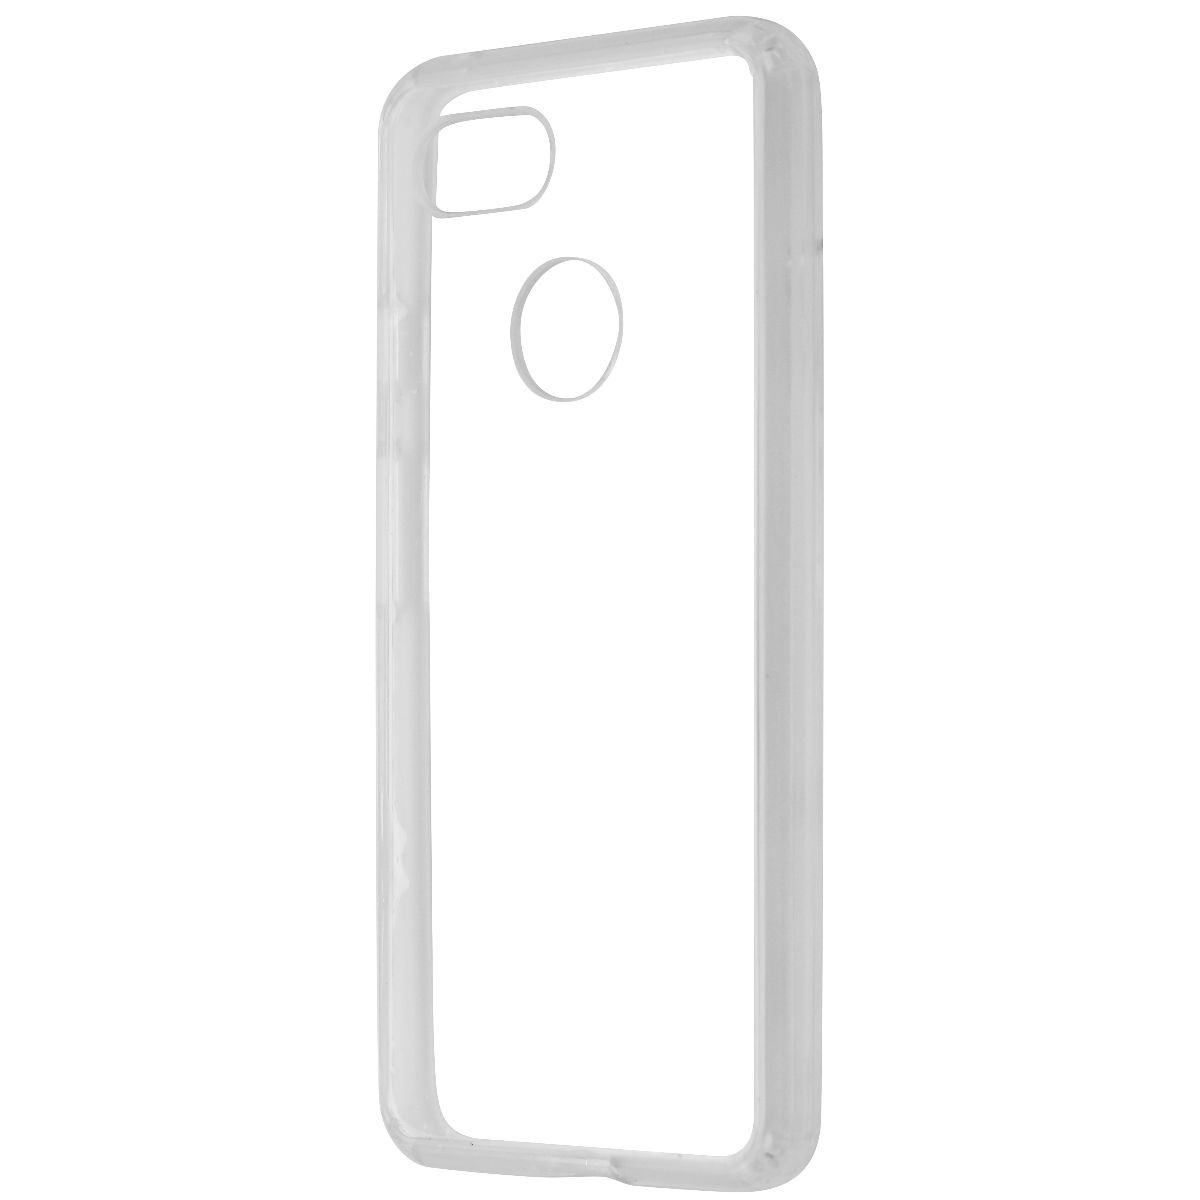 UBREAKIFIX Slim Hardshell Case For Google Pixel 3 Smartphones - Clear